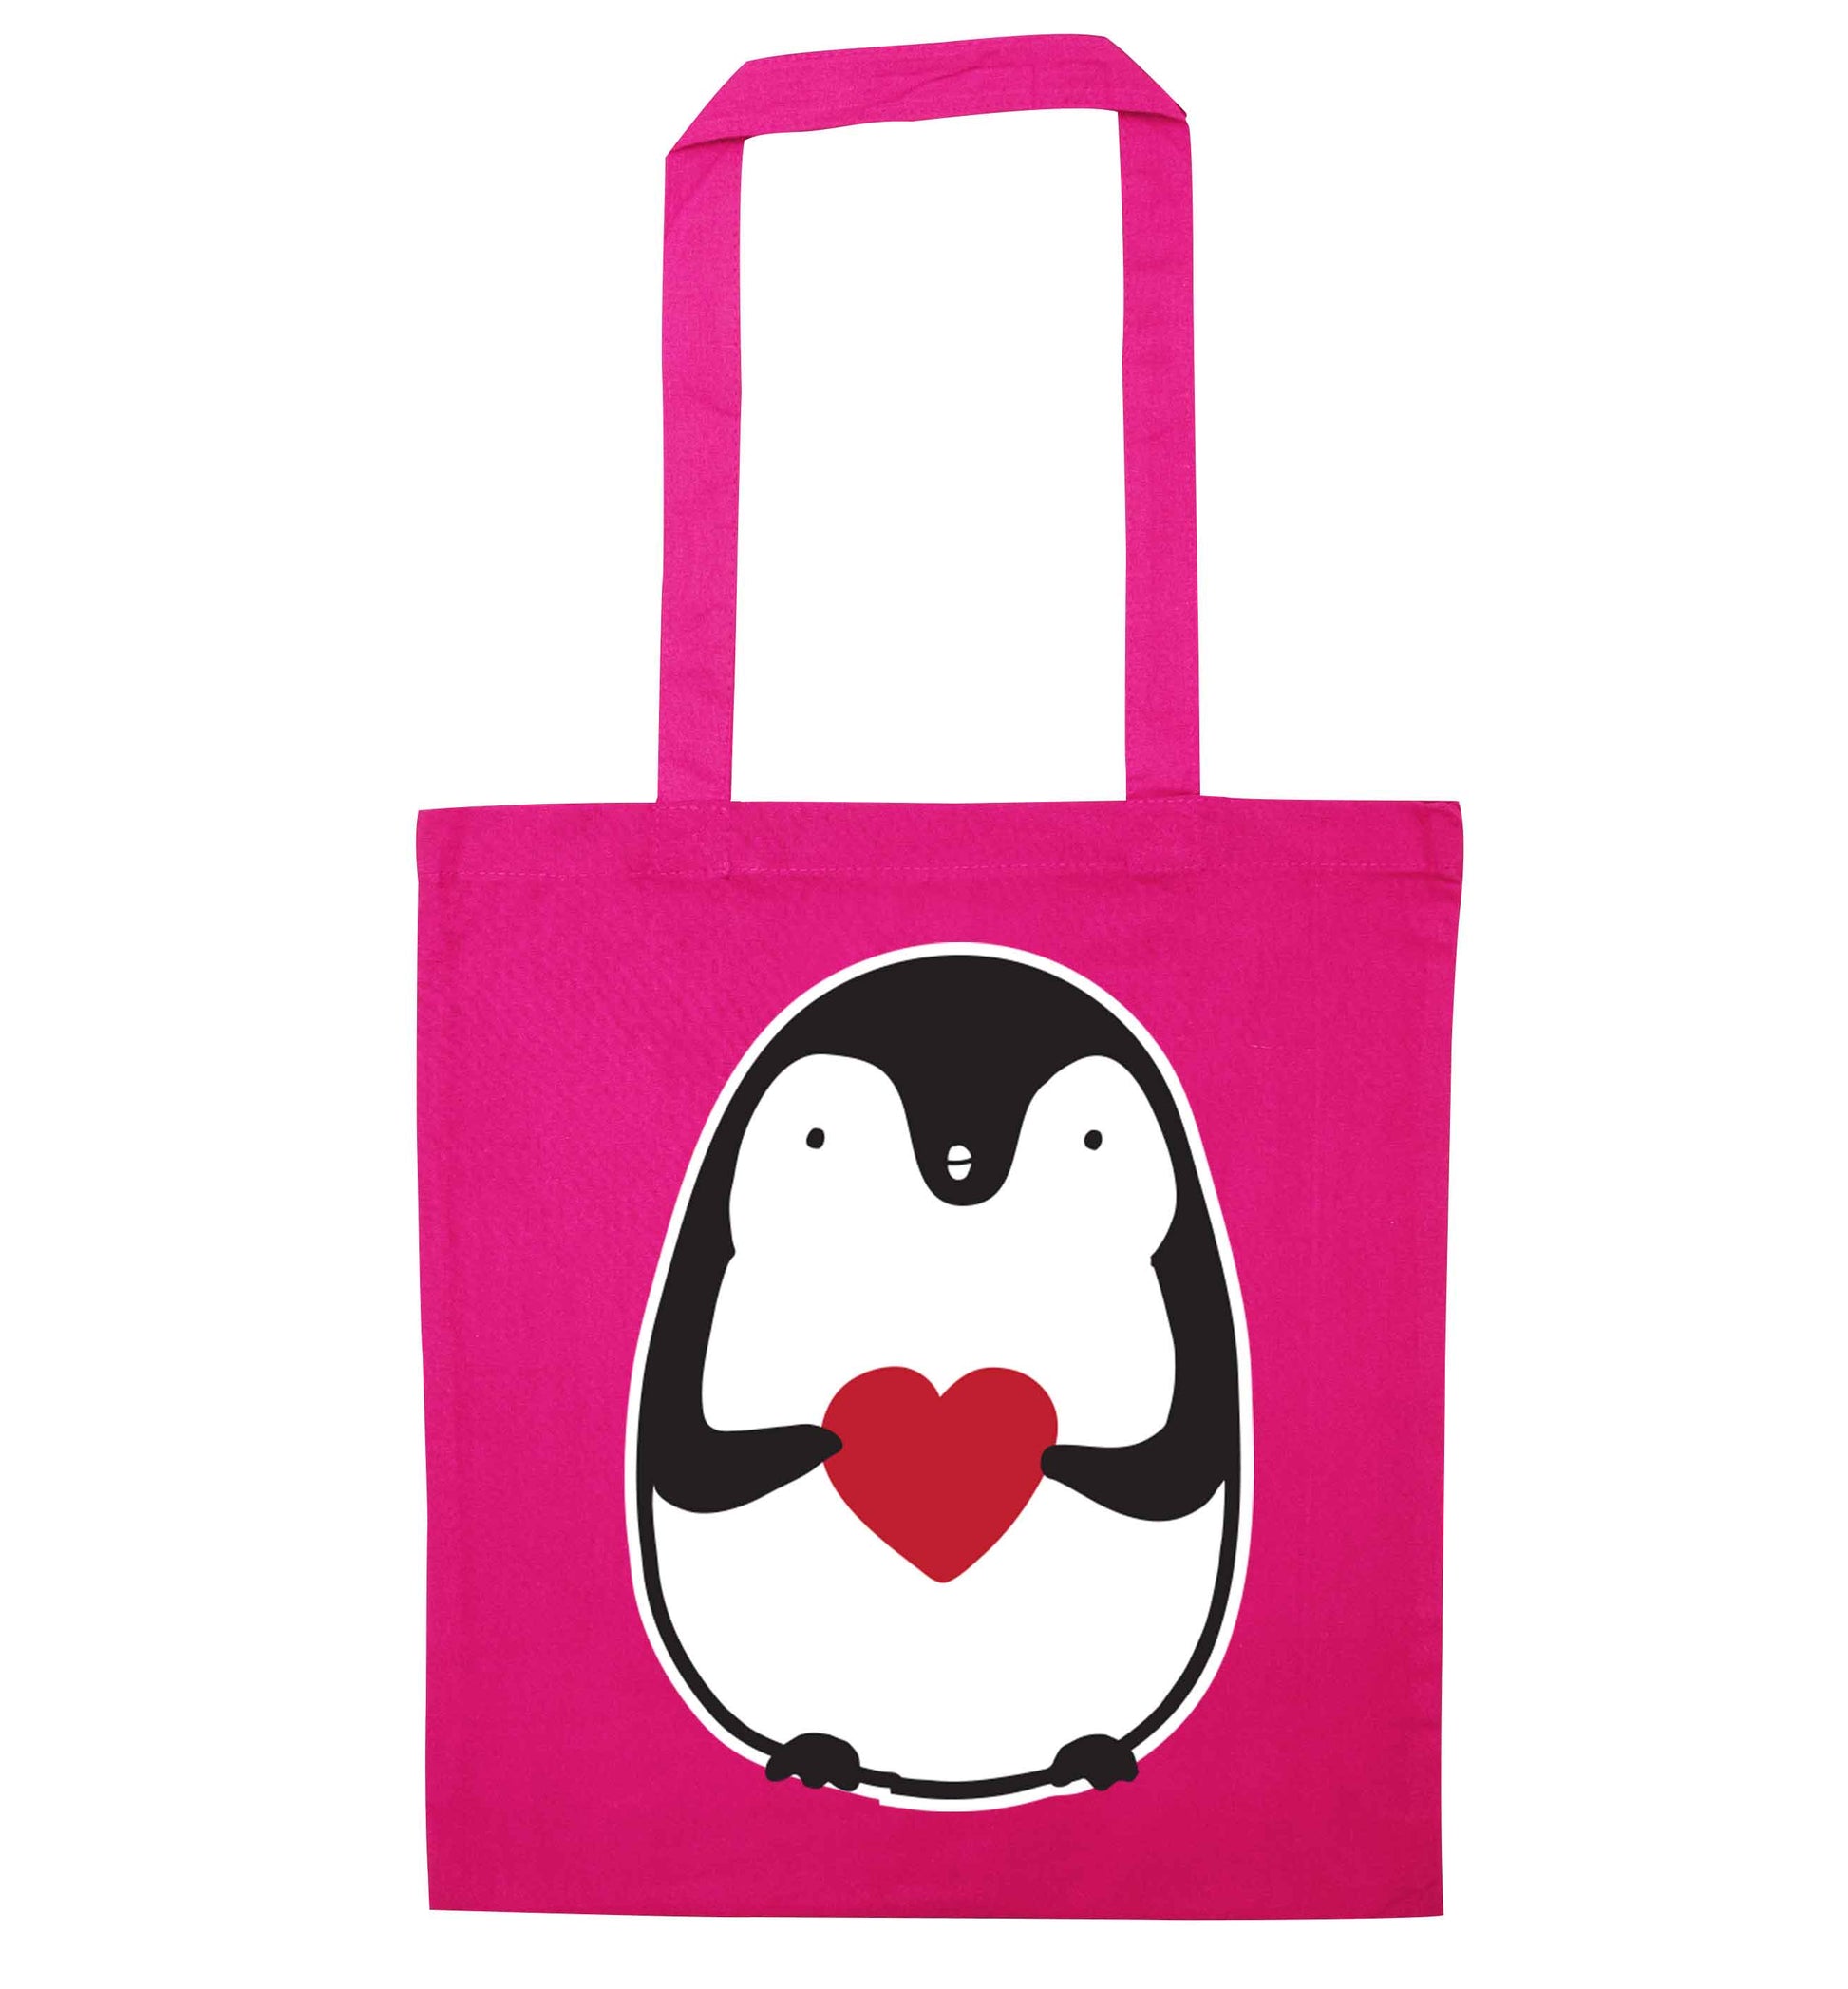 Cute penguin heart pink tote bag